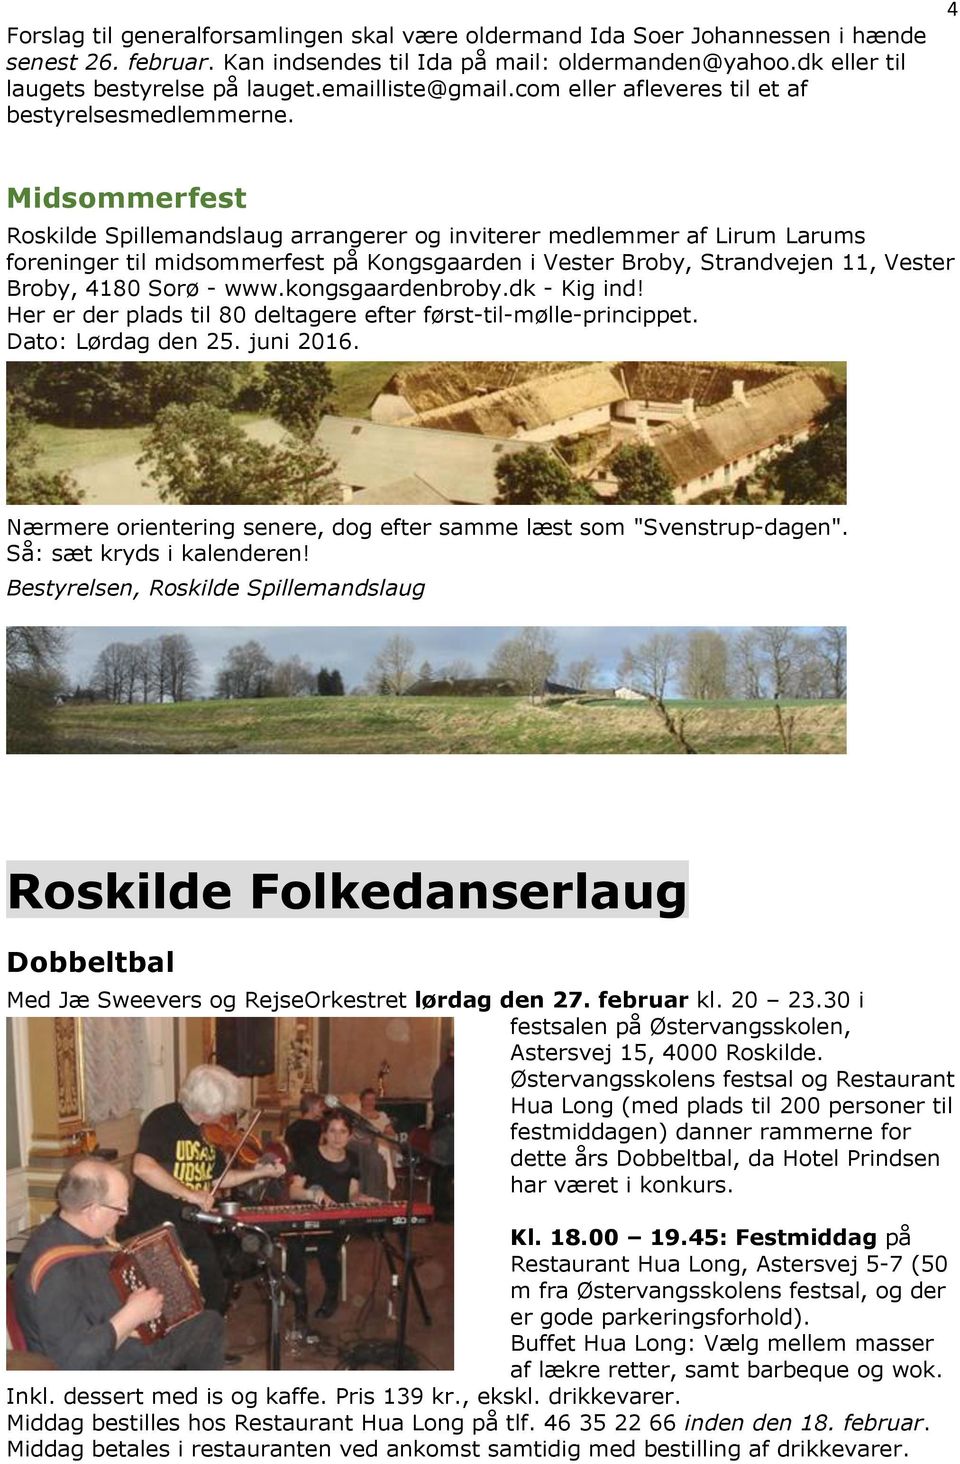 4 Midsommerfest Roskilde Spillemandslaug arrangerer og inviterer medlemmer af Lirum Larums foreninger til midsommerfest på Kongsgaarden i Vester Broby, Strandvejen 11, Vester Broby, 4180 Sorø - www.